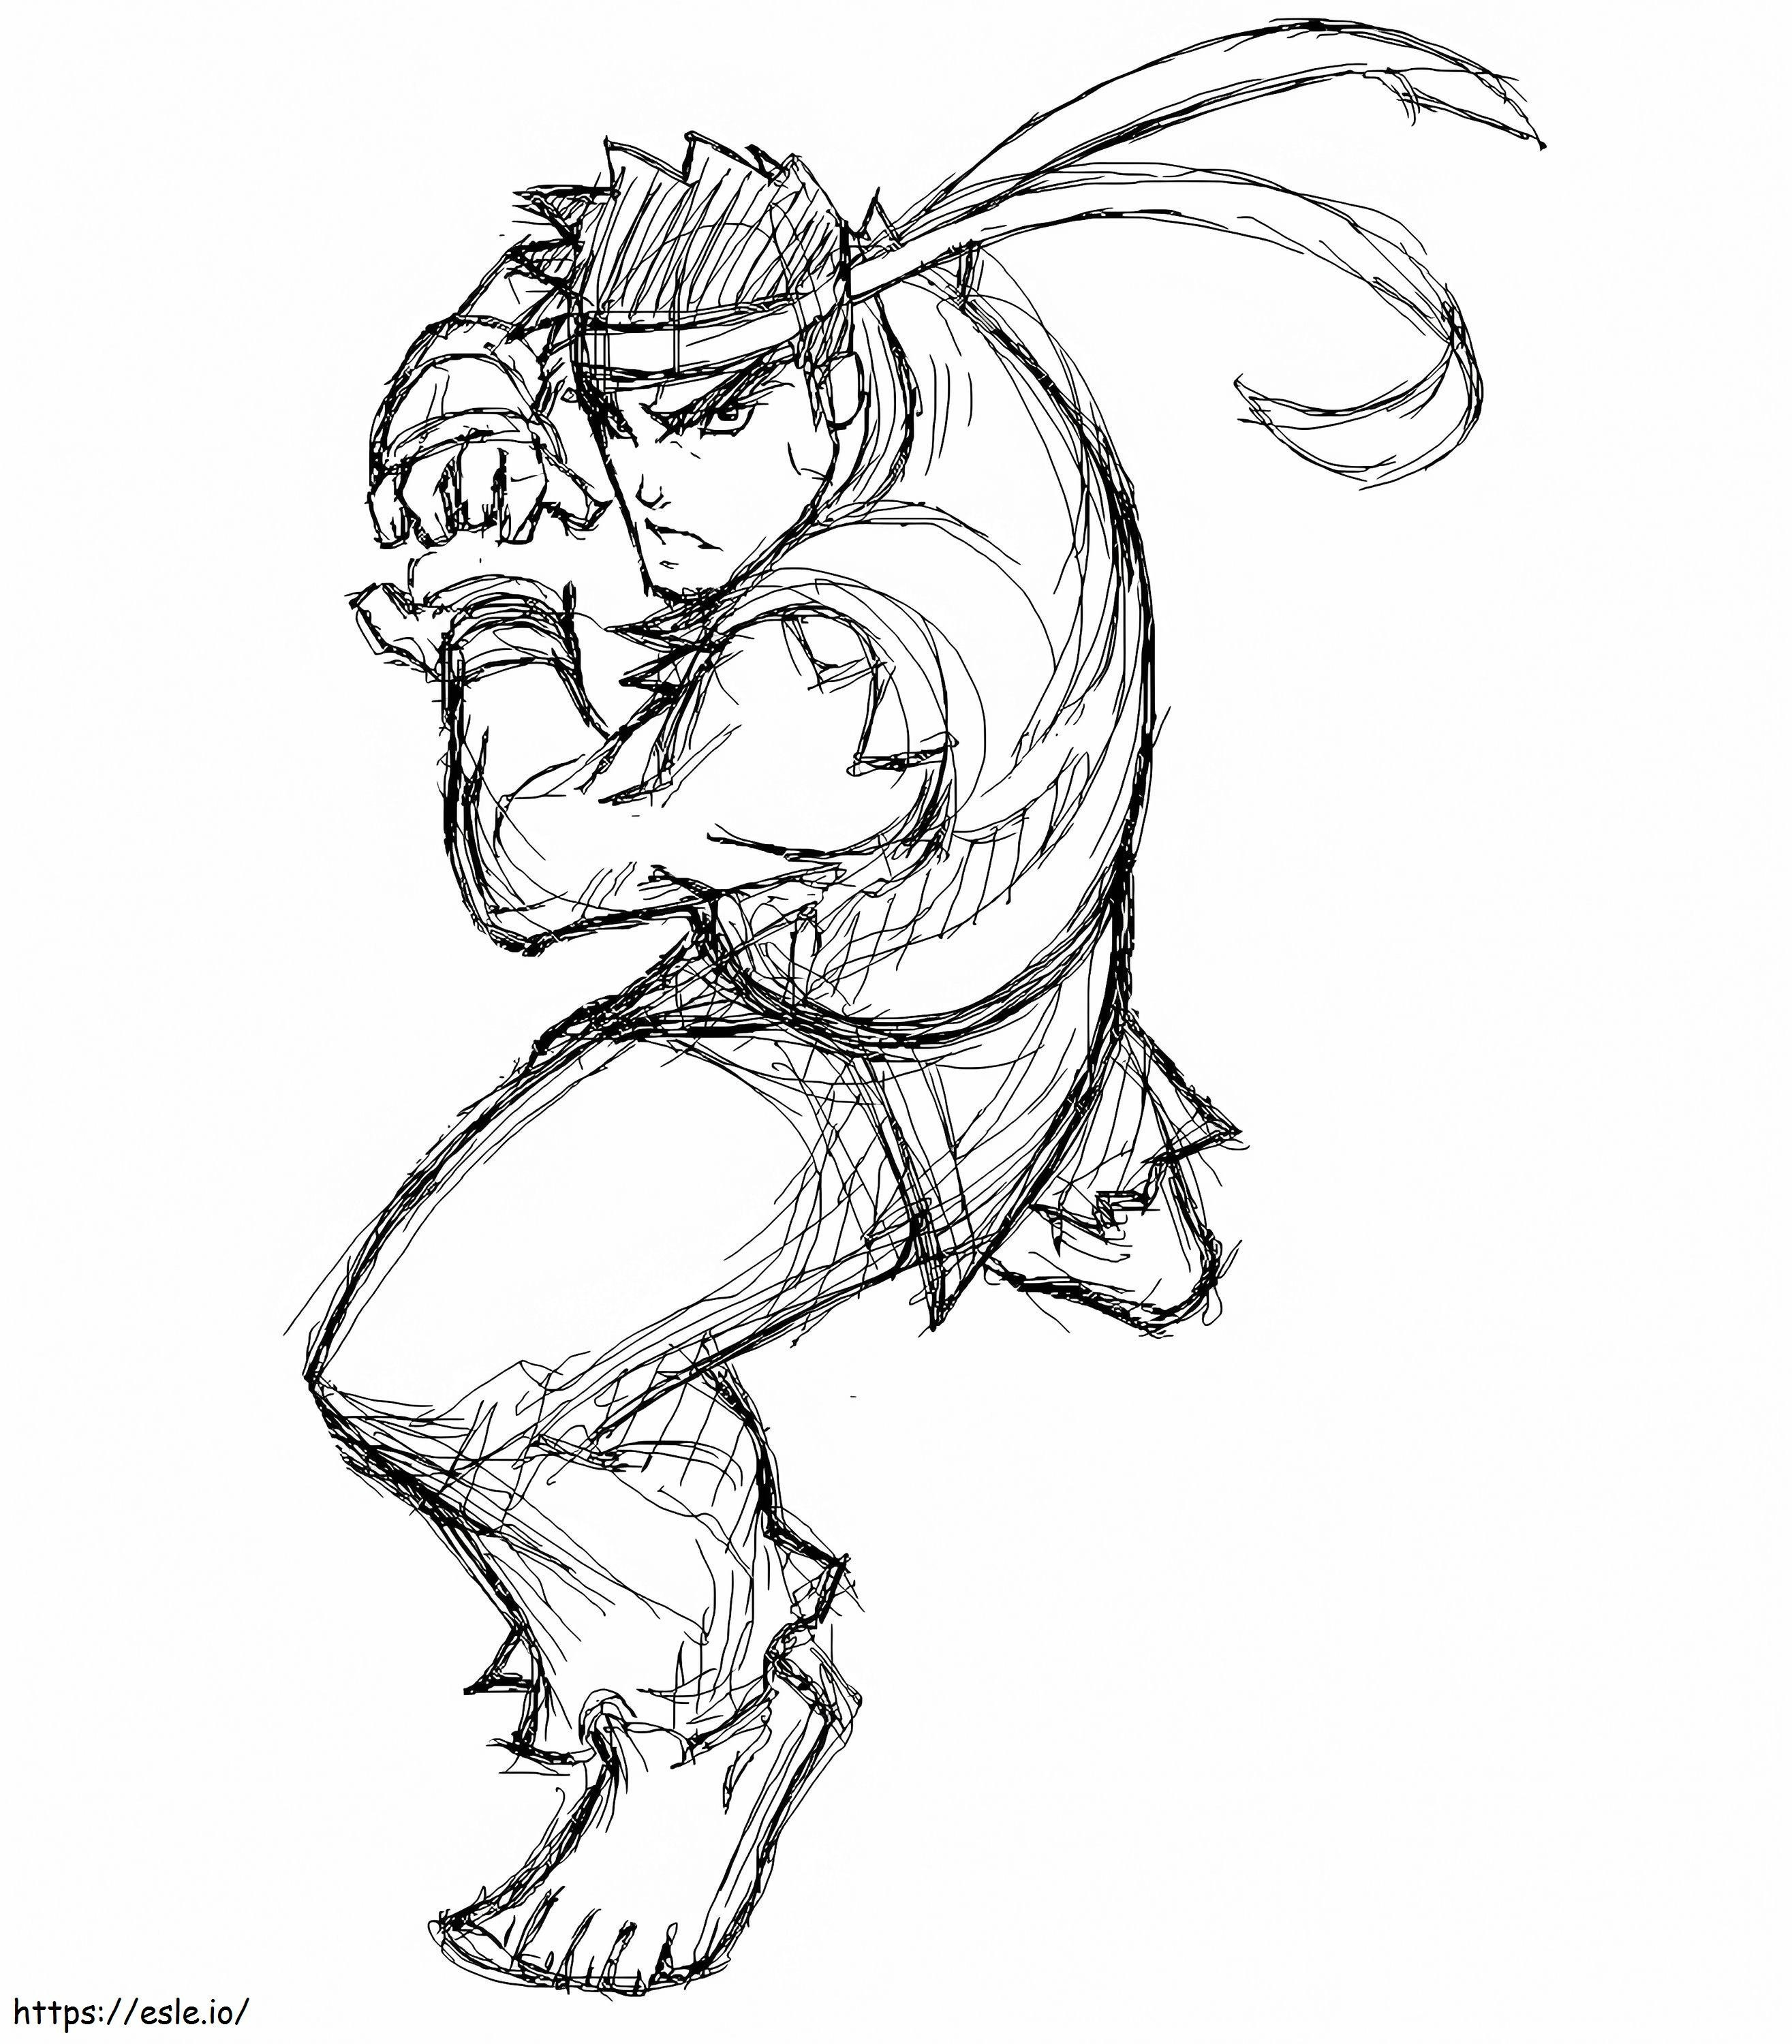 Disegno a matita Ryu da colorare